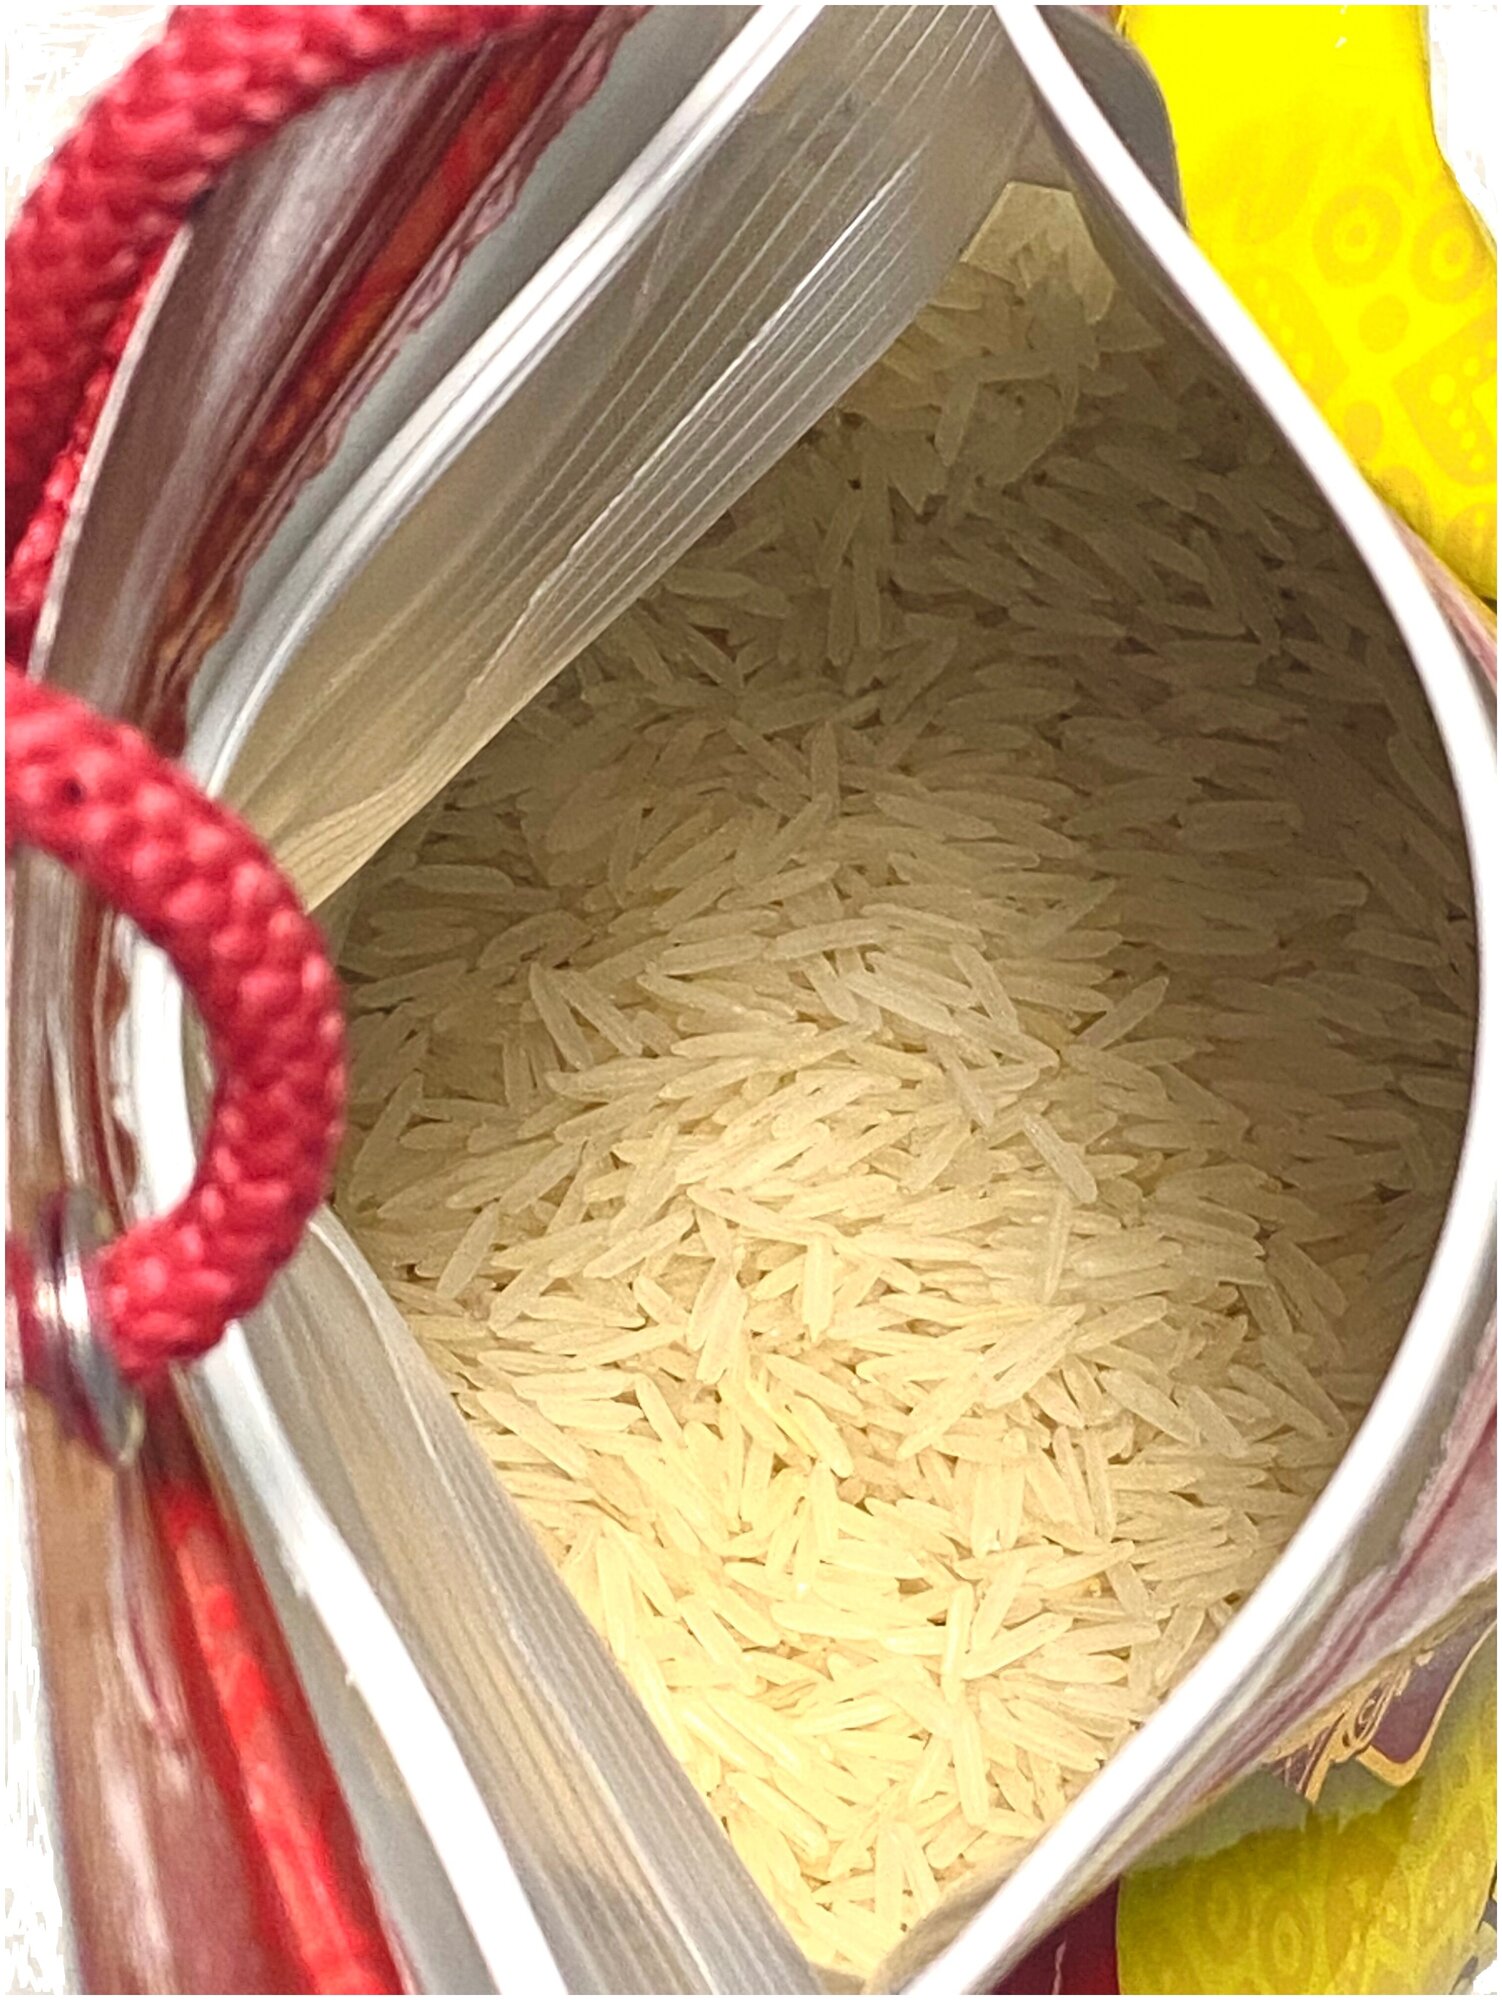 Рис индийский басмати DAS PREMIUM NEW длиннозерный пропаренный для плова 2 кг упаковка зип-пакет